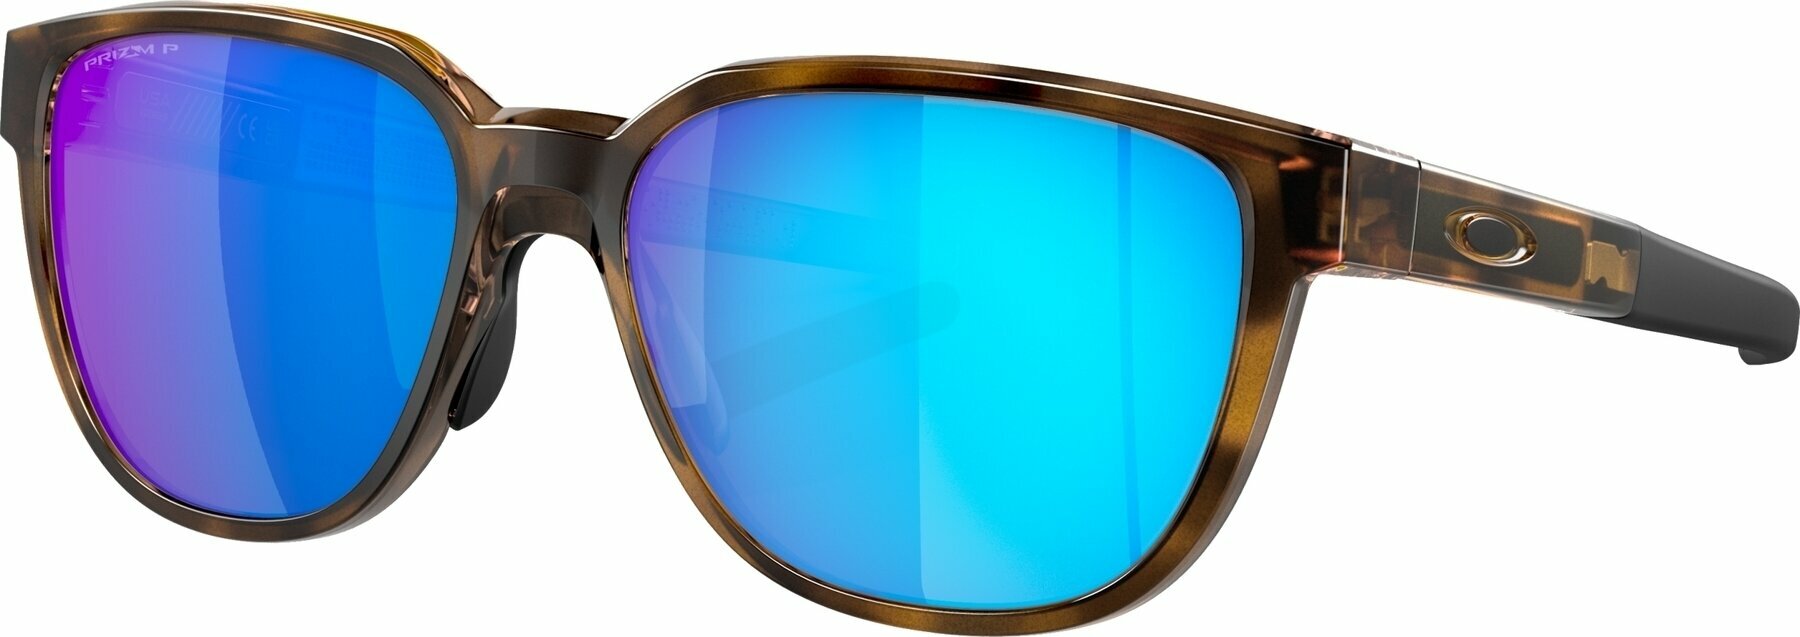 Γυαλιά Ηλίου Lifestyle Oakley Actuator 92500457 Brown Tortoise/Prizm Sapphire Polarized L Γυαλιά Ηλίου Lifestyle